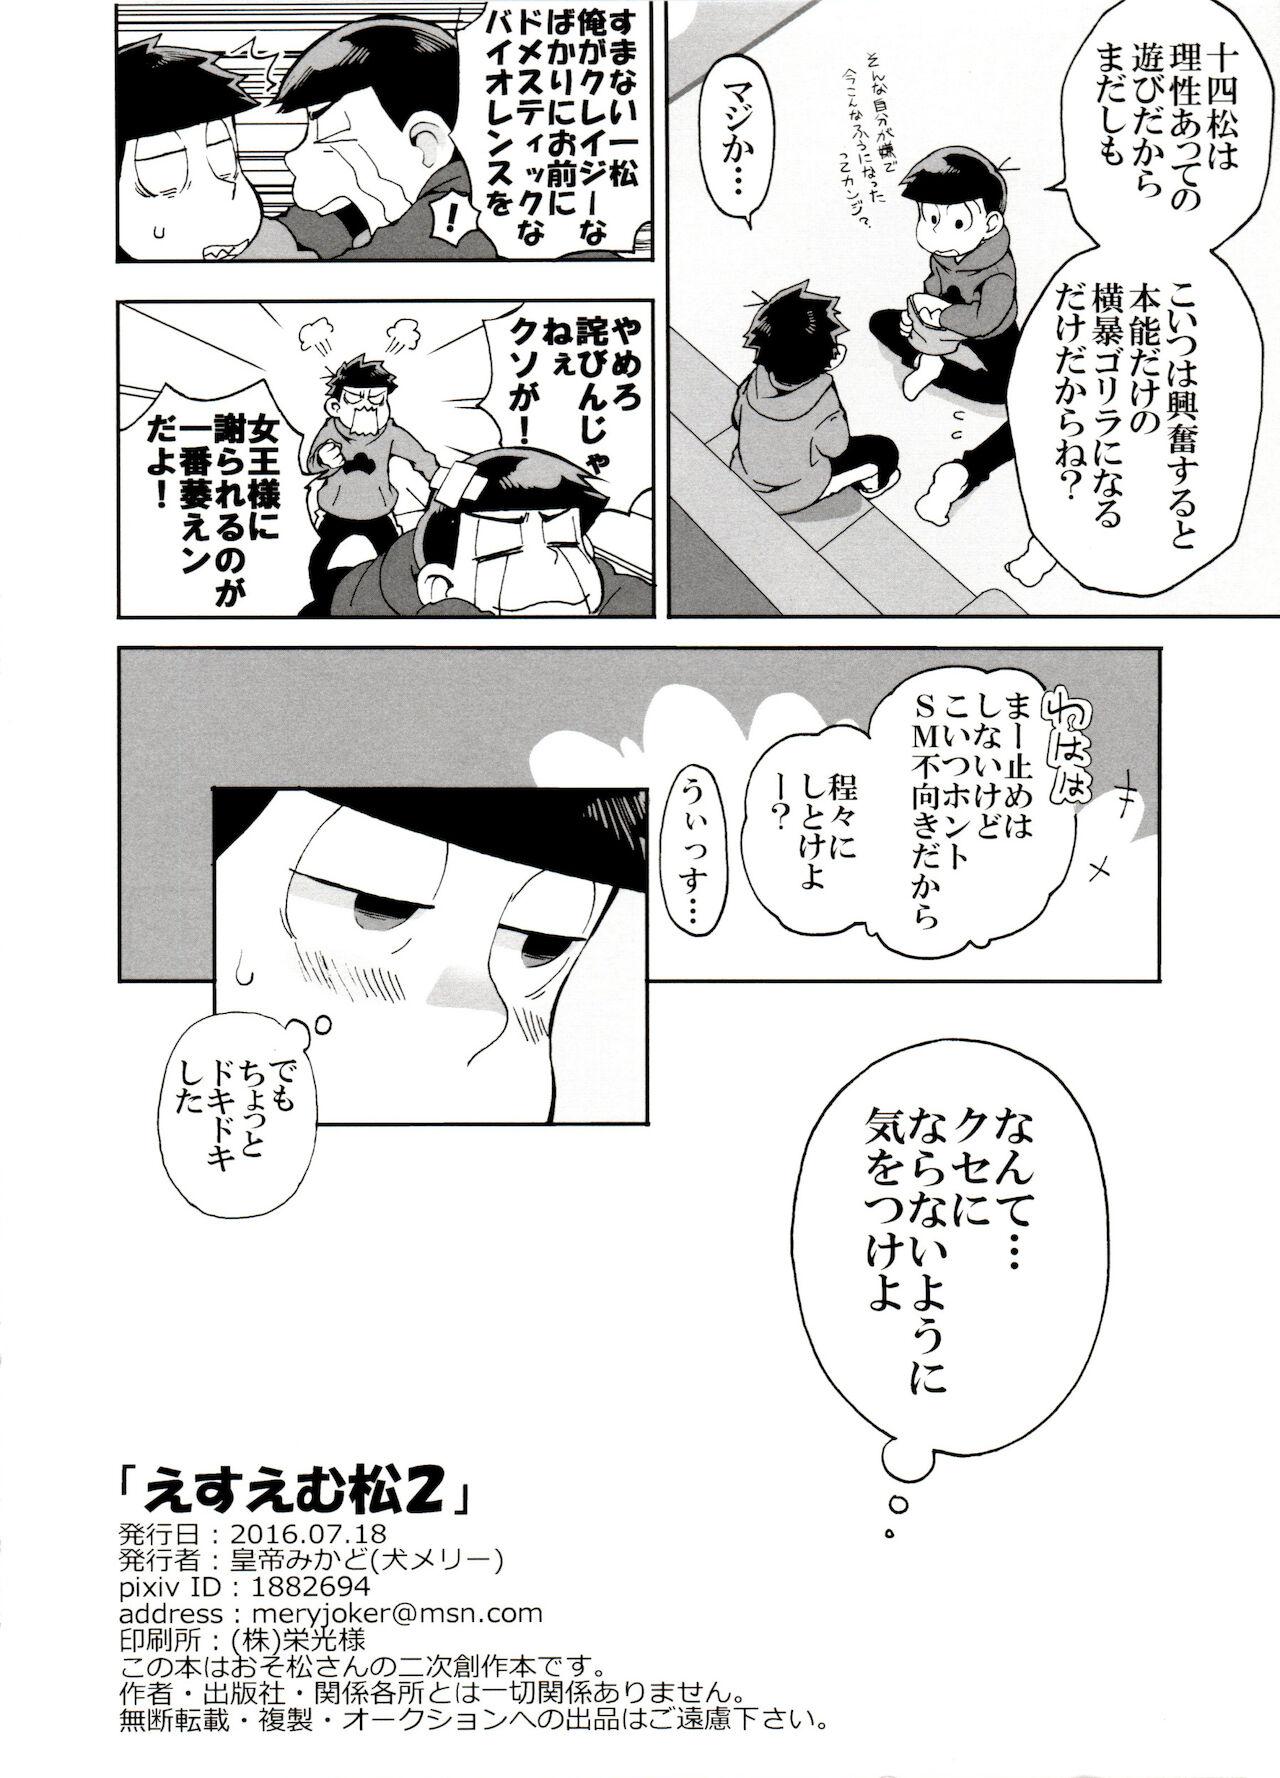 Hung SM Matsu 2 - Osomatsu san Banging - Page 24